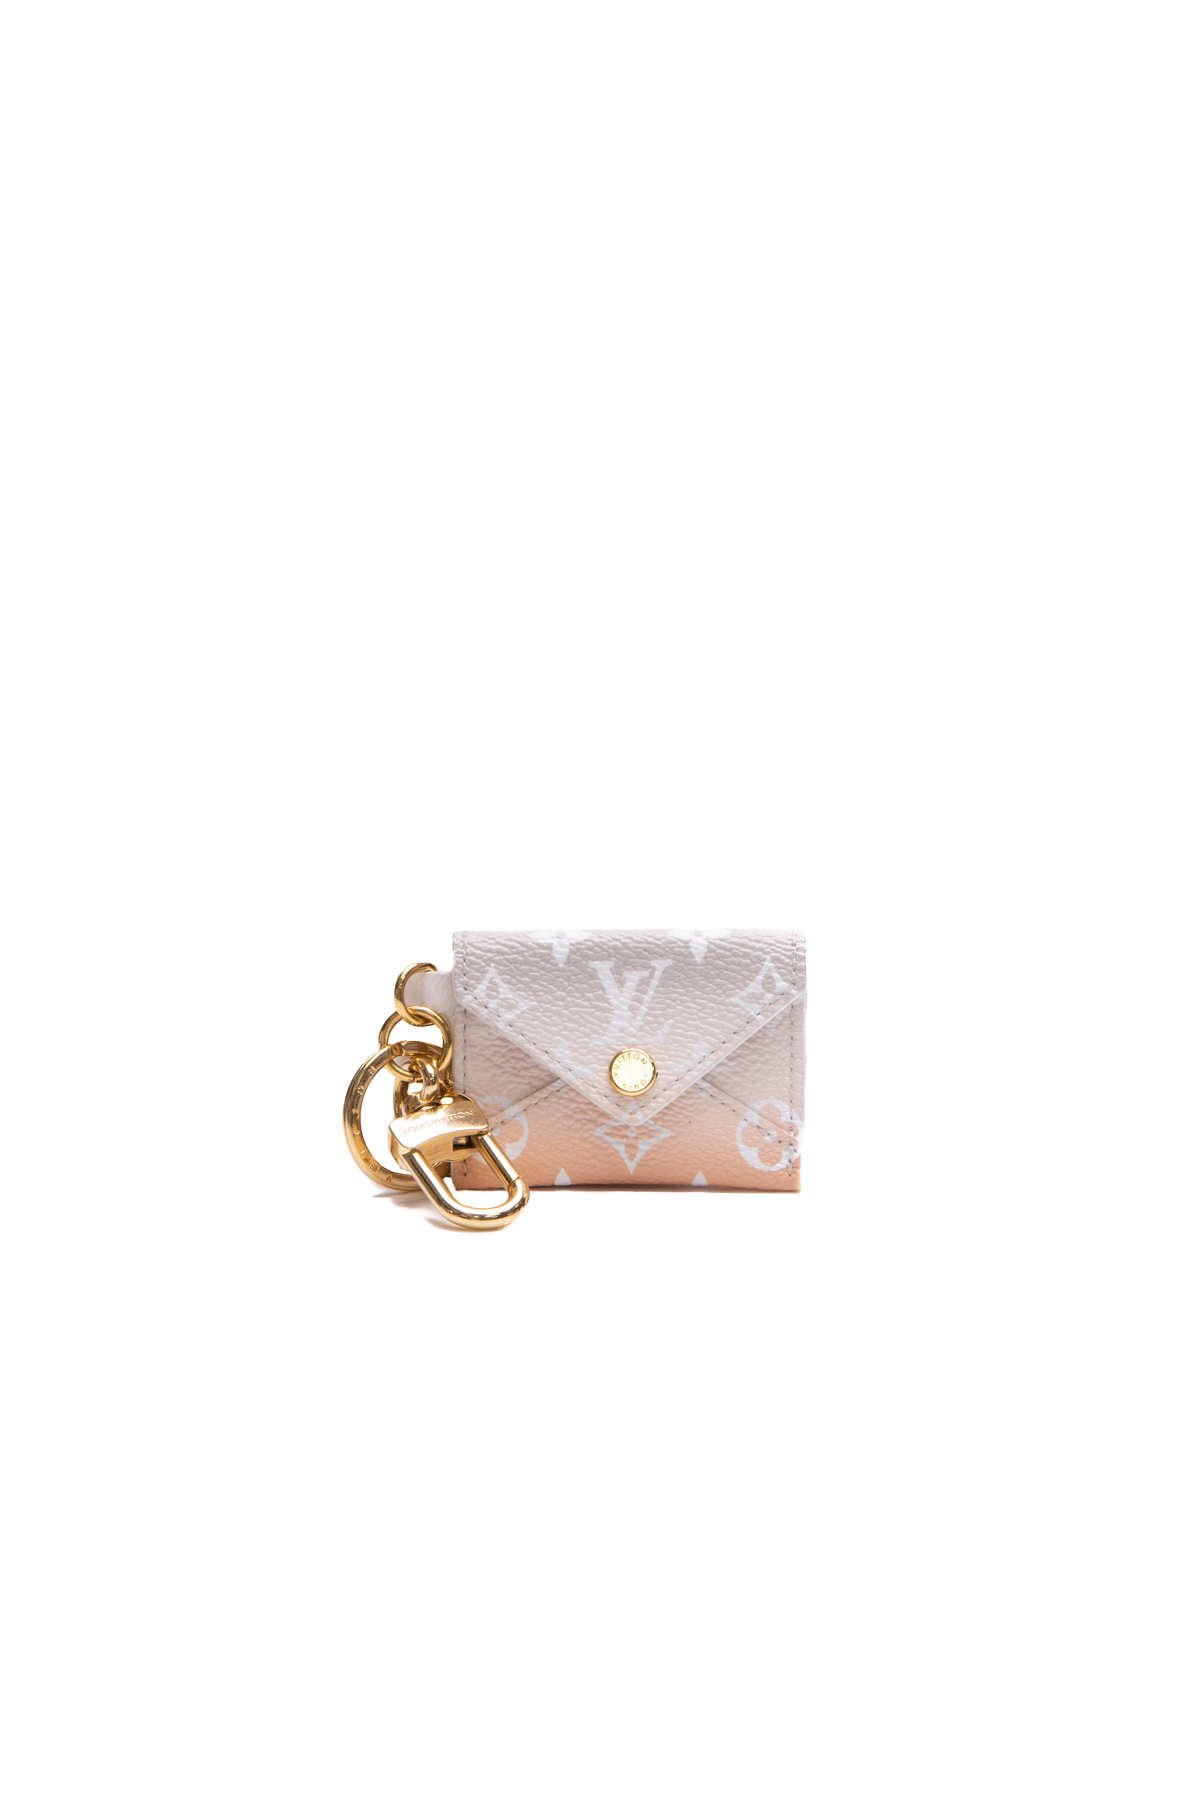 Auth LOUIS VUITTON Fleur de Monogram Bag Charm Gold/Off White